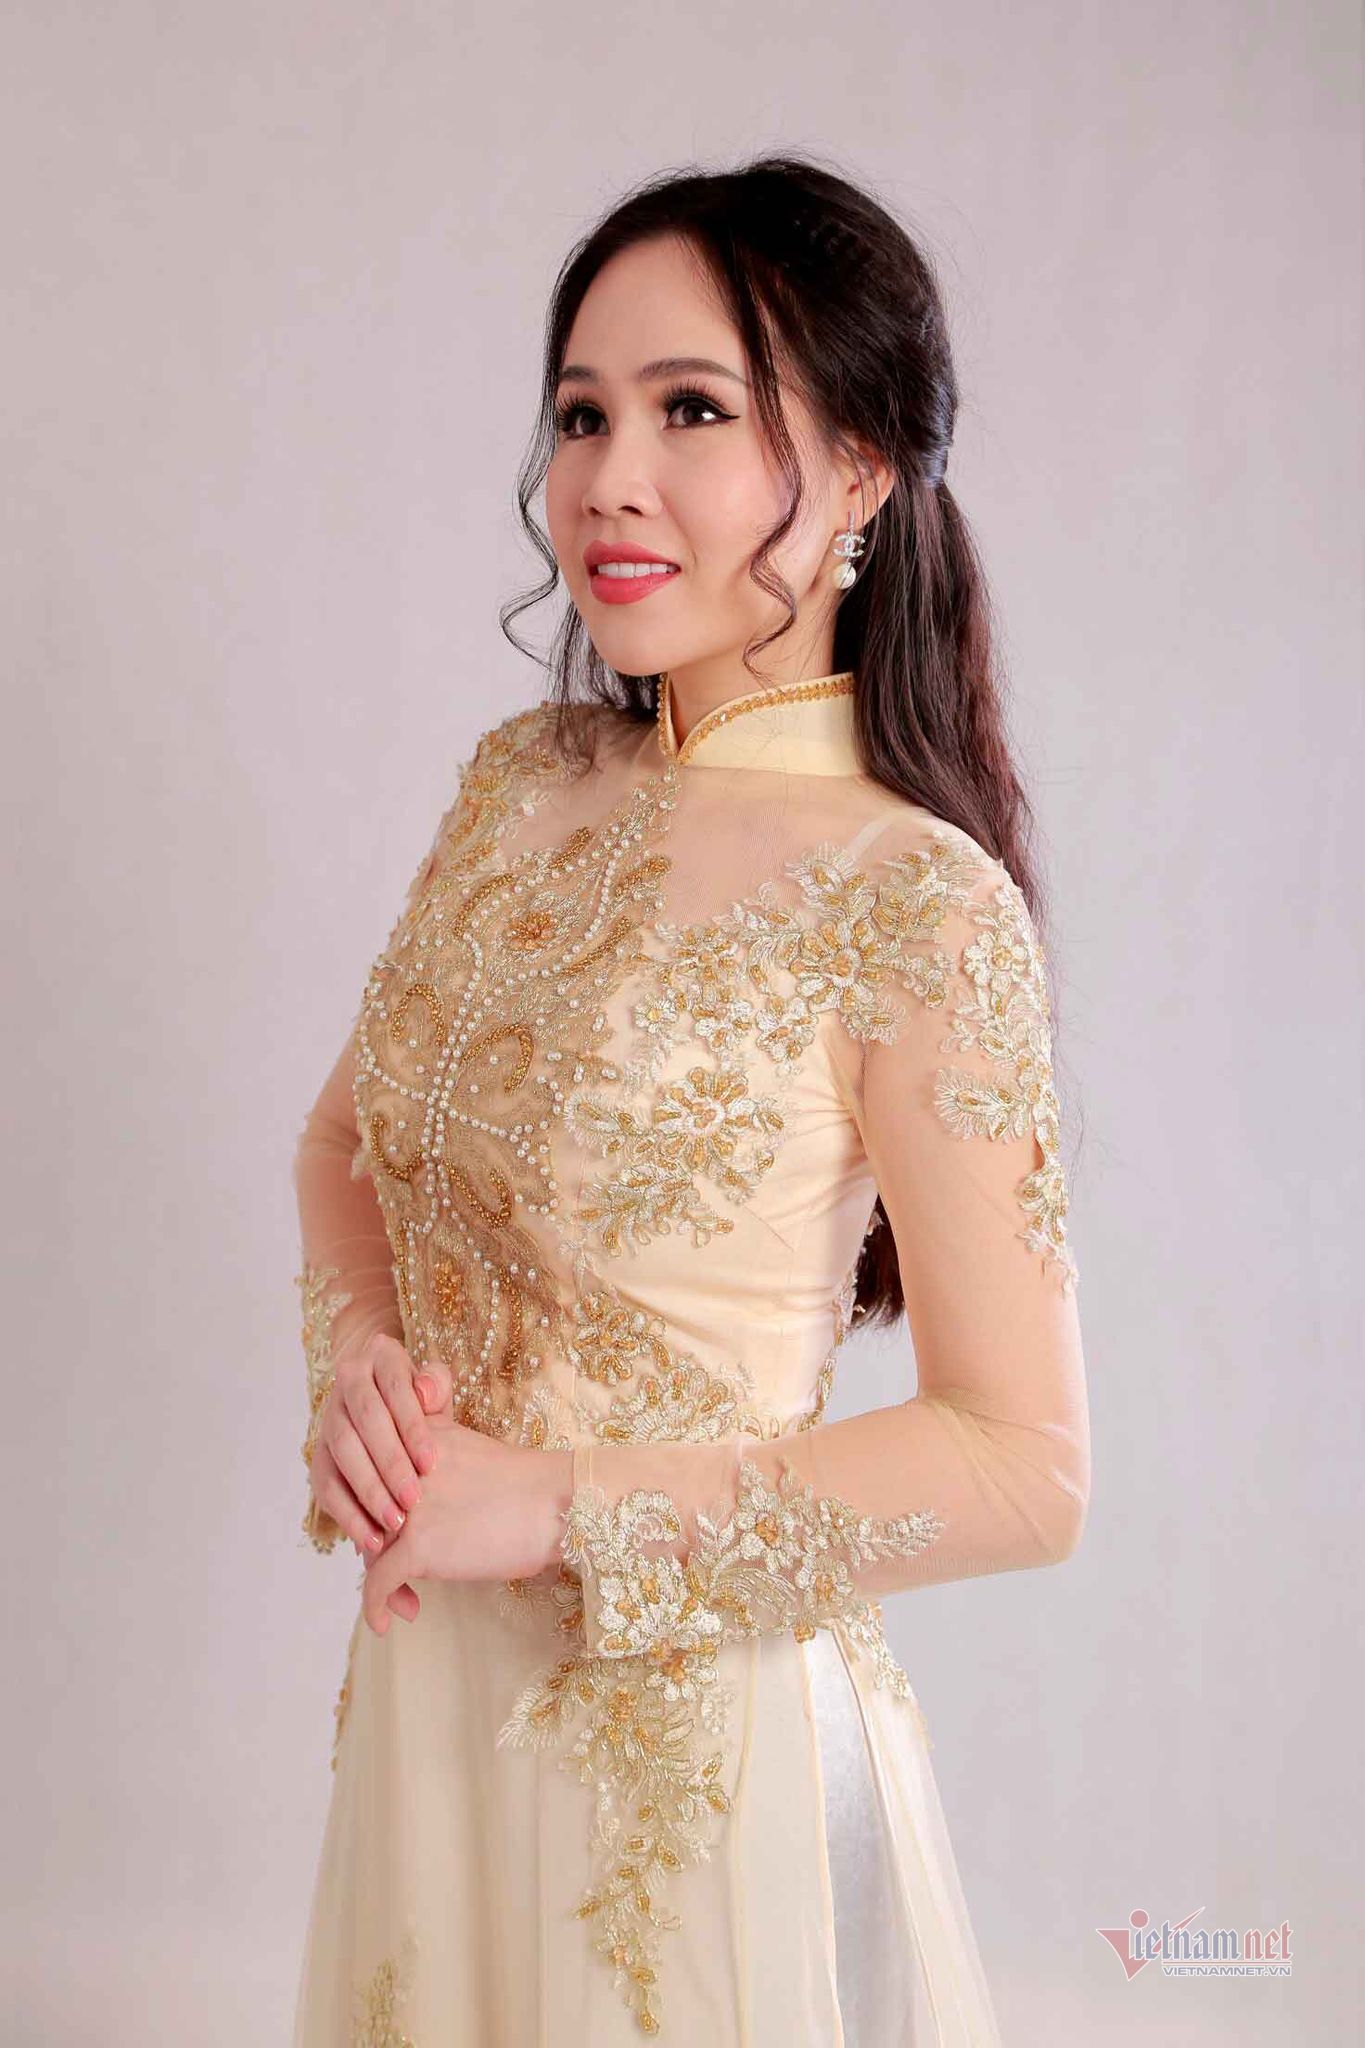 'Diễn viên lùn nhất showbiz Việt' mong sớm đoàn tụ với chồng Tây